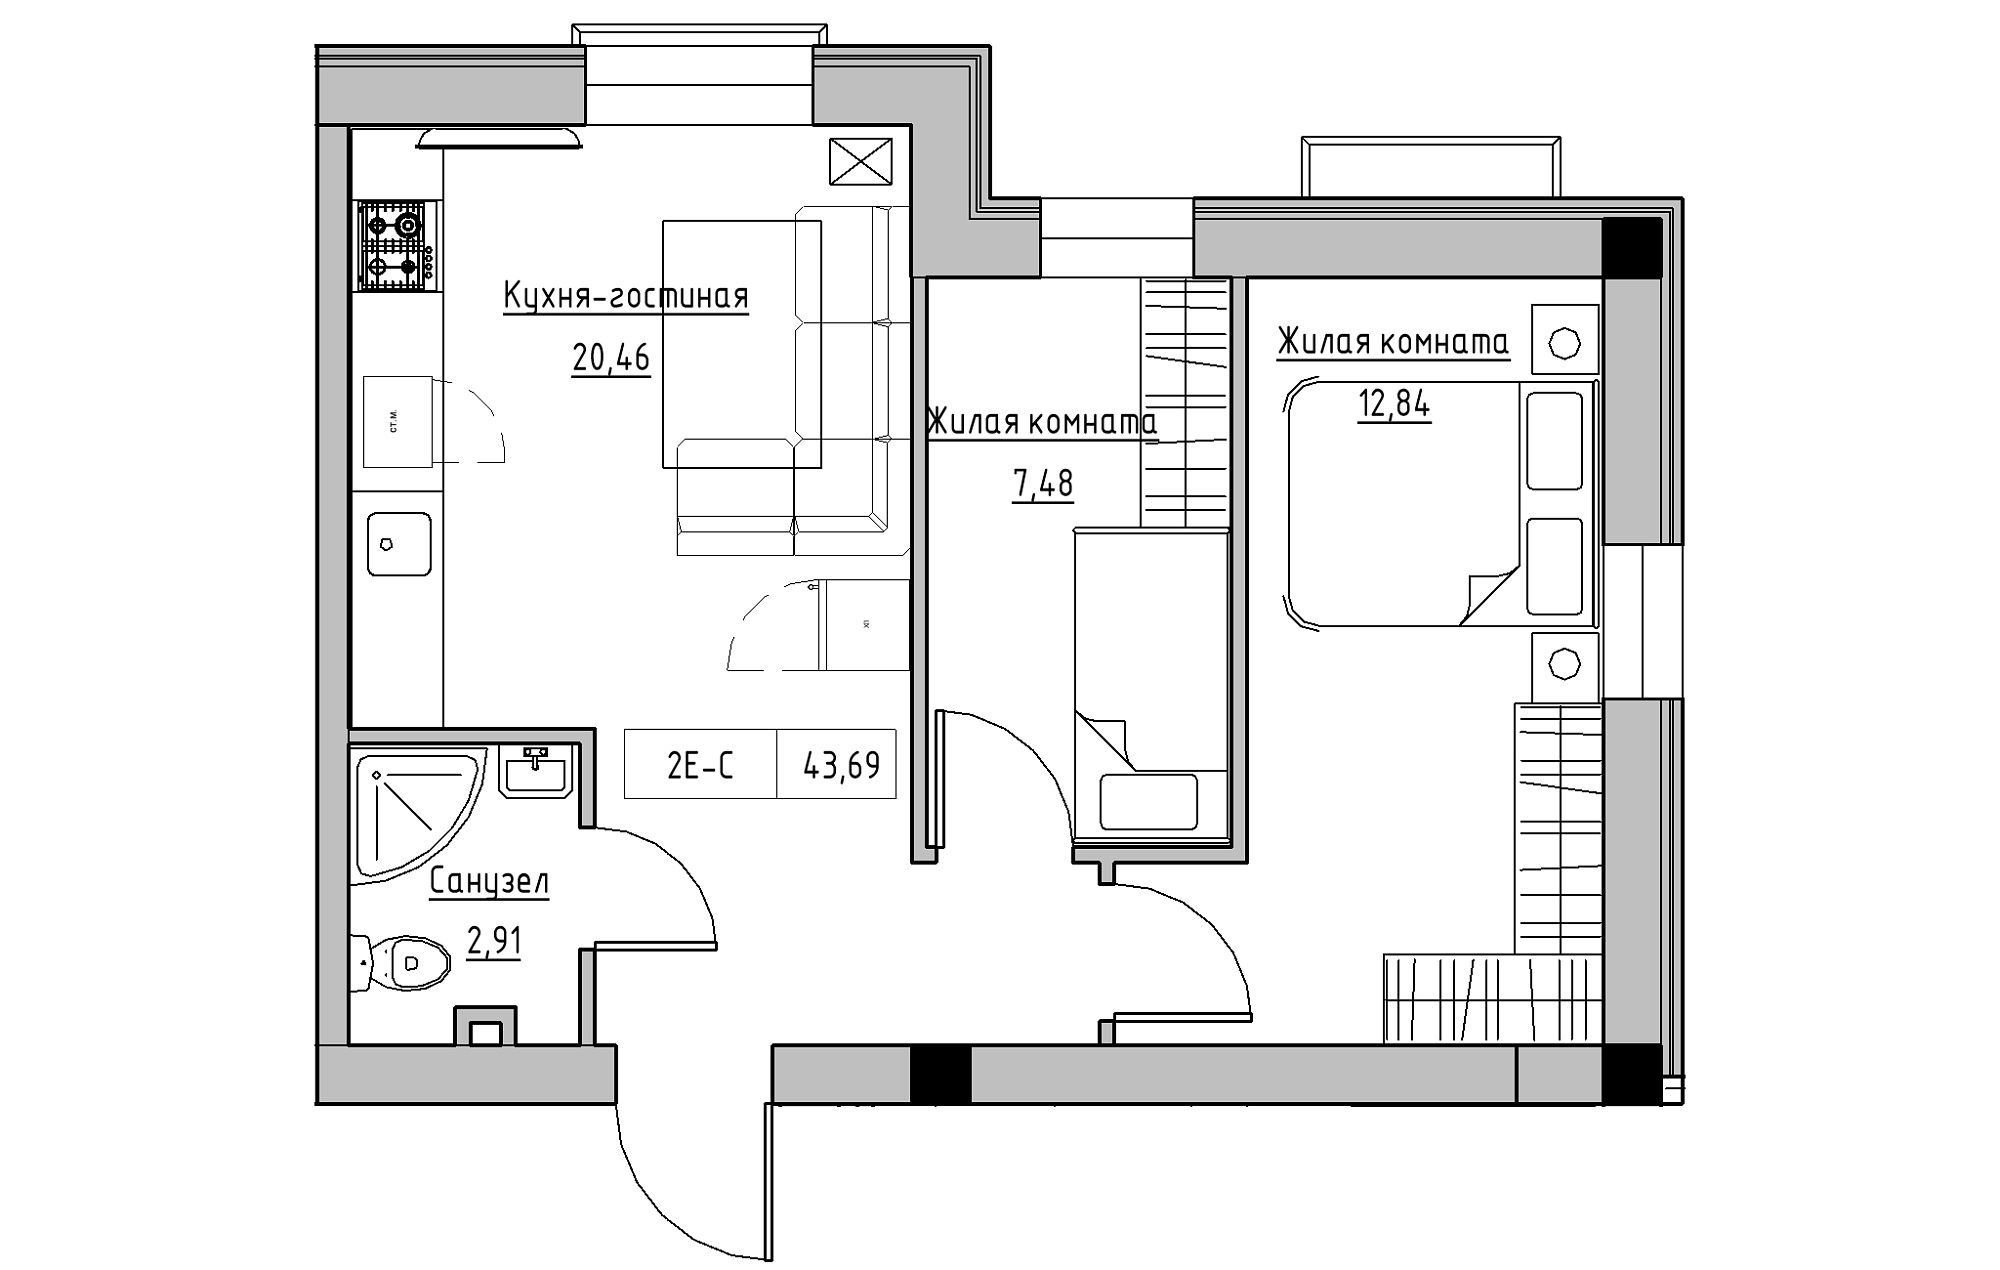 Планировка 2-к квартира площей 43.69м2, KS-018-01/0008.